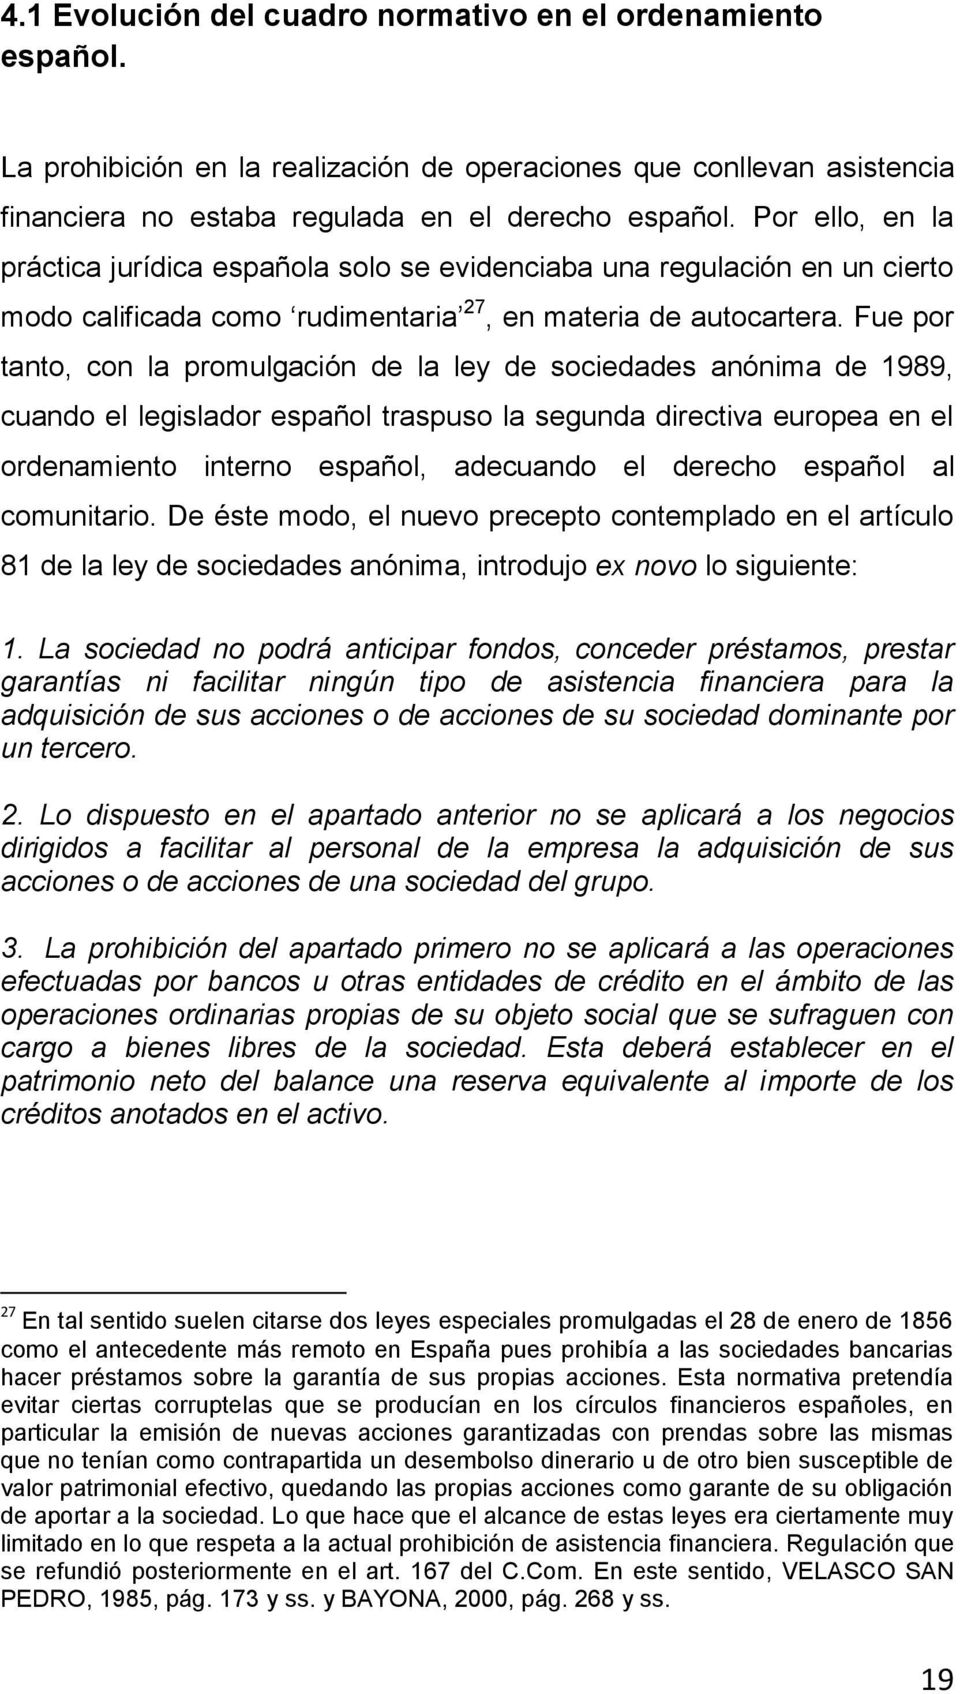 Fue por tanto, con la promulgación de la ley de sociedades anónima de 1989, cuando el legislador español traspuso la segunda directiva europea en el ordenamiento interno español, adecuando el derecho